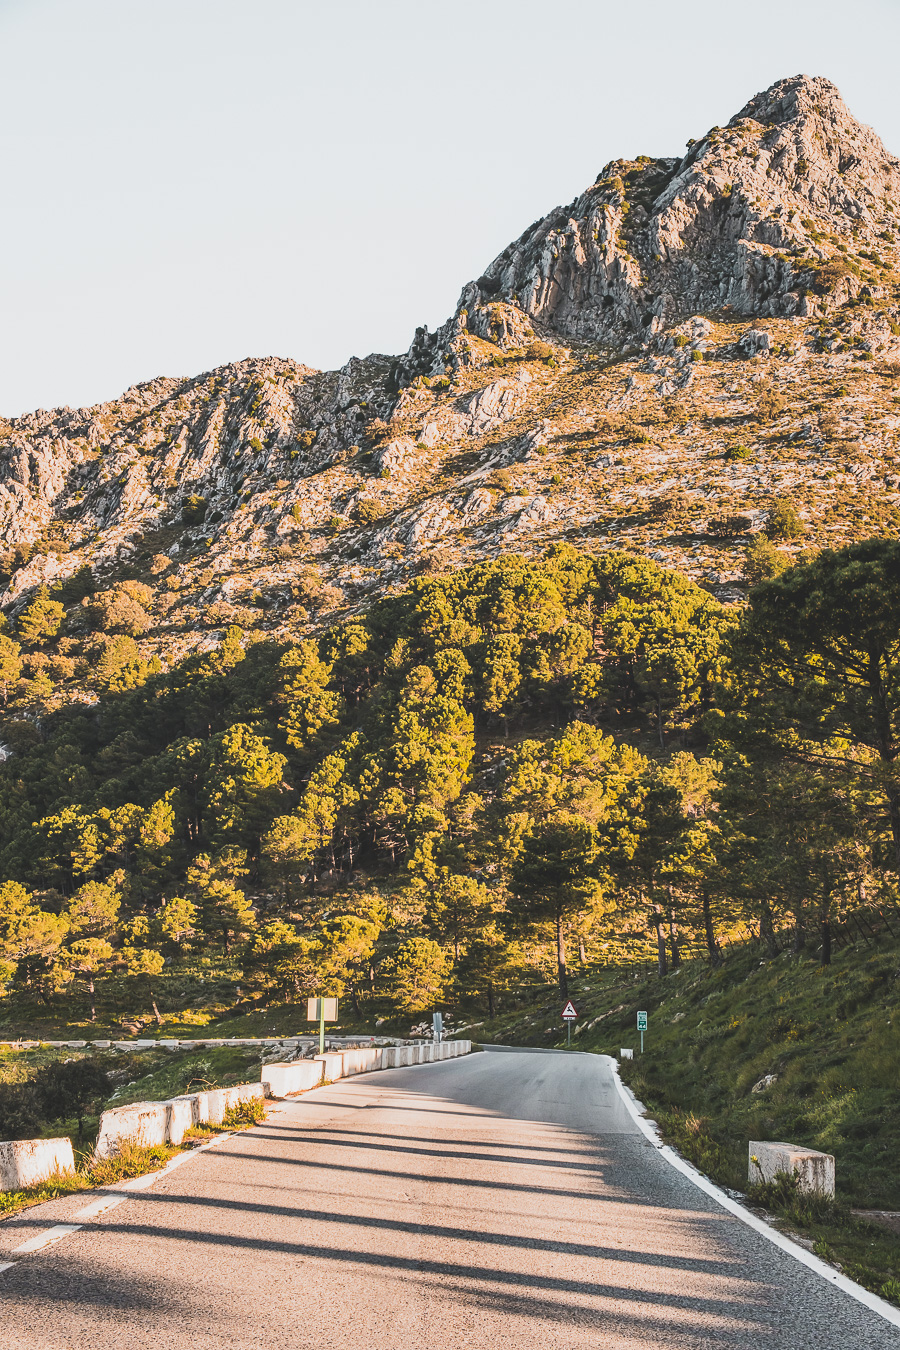 Visitez l'Andalousie en 5 jours en van ! 🌞🚐 Un road trip unique à travers les paysages époustouflants et les charmants villages blancs de cette région d’Espagne. Partez à l’aventure et explorez des destinations incroyables, idéales pour un voyage en couple ou en famille. Cliquez pour des conseils pratiques, des itinéraires détaillés et les meilleures astuces pour réussir votre voyage en van. Préparez-vous à vivre une expérience mémorable en Andalousie ! #VoyageEnVan #RoadTrip #Andalousie #VacancesEnEspagne #NatureEnEspagne